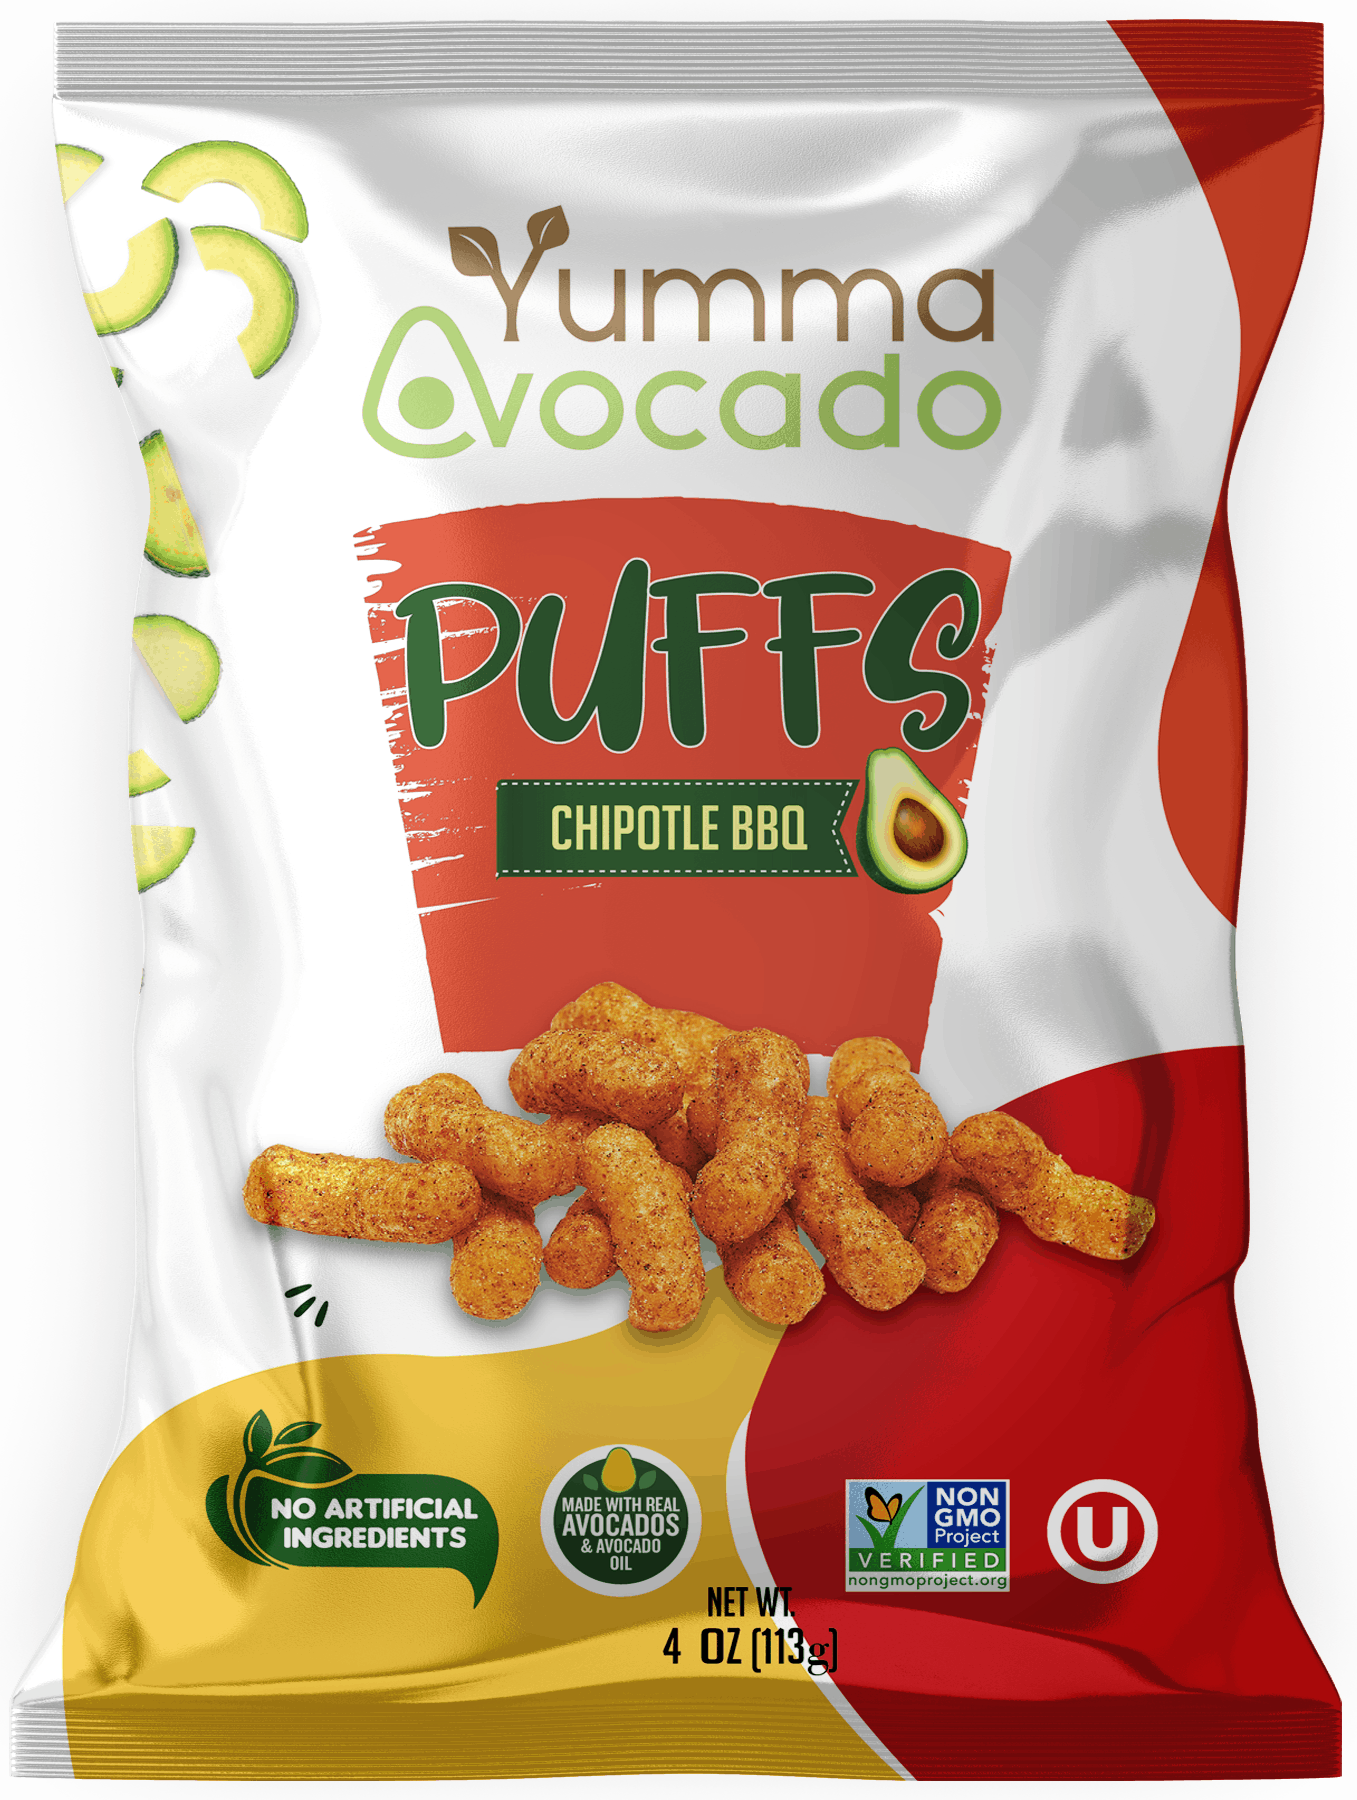 Yumma Avocado Puffs Chipotle BBQ 4 oz 6 units per case